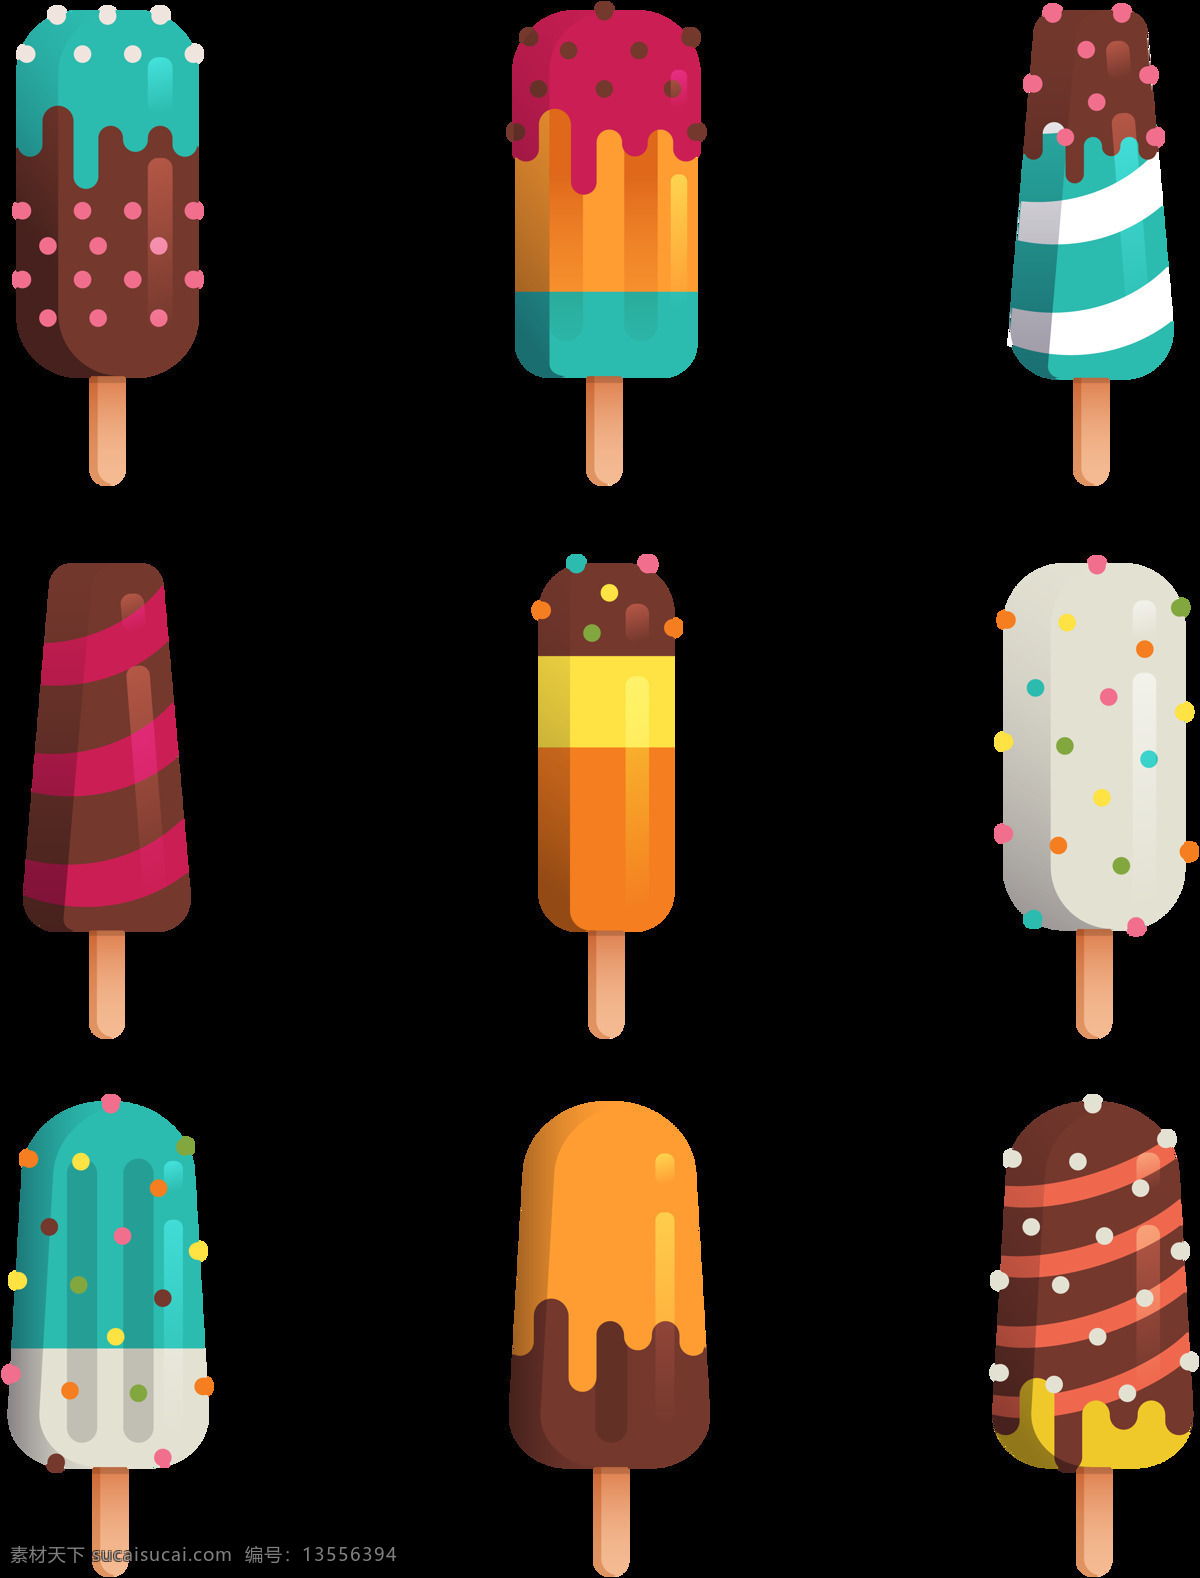 彩色 雪糕 冰淇淋 免 抠 透明 图 层 甜品图标 冷饮插图 清凉甜品 冰淇淋标志 雪糕图标 冰激凌图标 冰激凌插图 卡通冰淇淋 手绘冰淇淋 雪糕图案 冰淇淋促销 冰淇淋素材